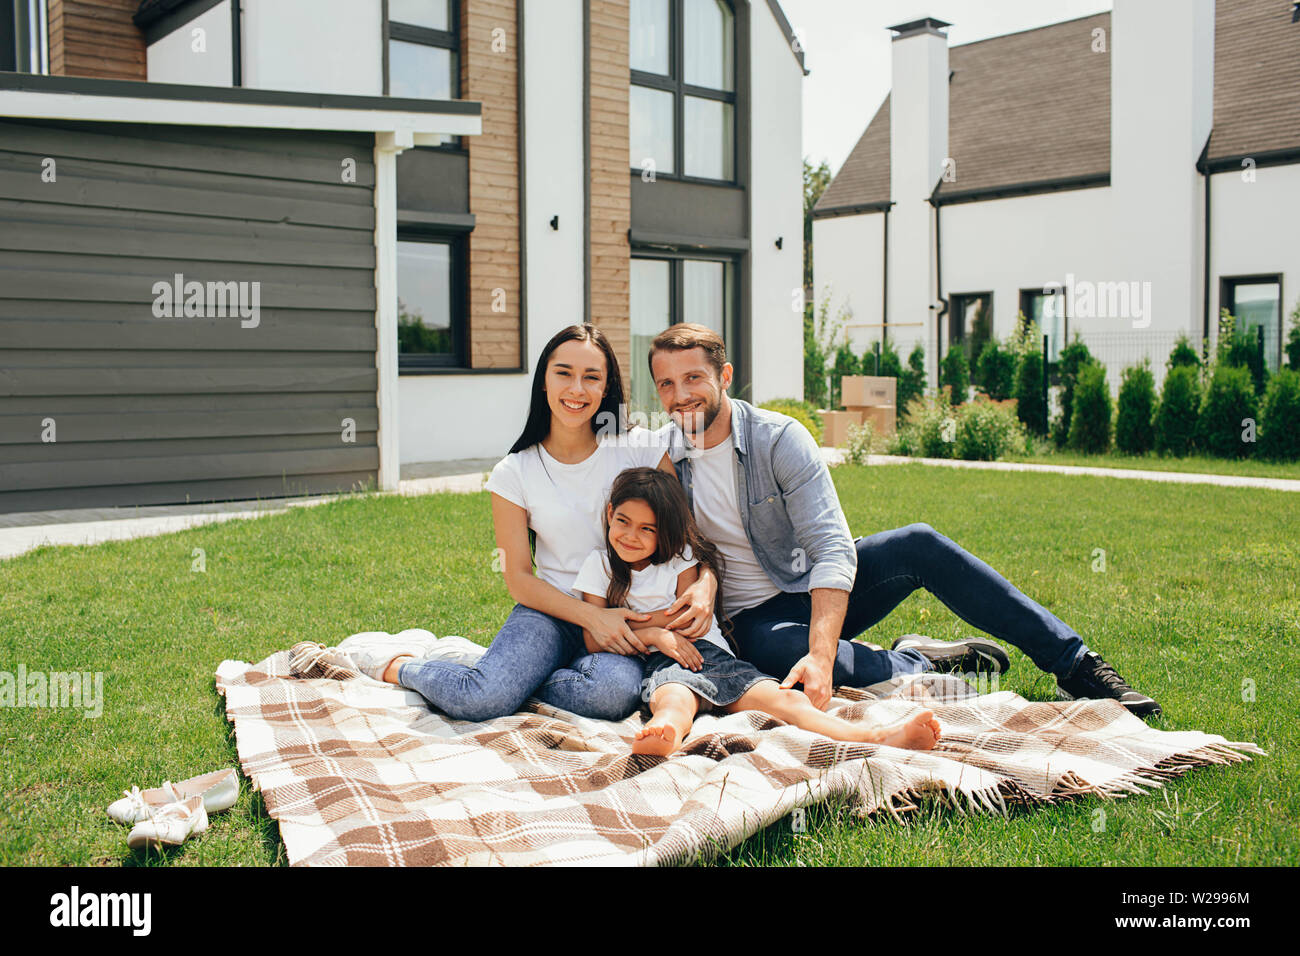 Happy heteroseksual Familie sitzt auf Gras in der Nähe ihres neuen Hauses. Familie sitzt auf Rasen, Kauf neuer großes Haus. Stockfoto